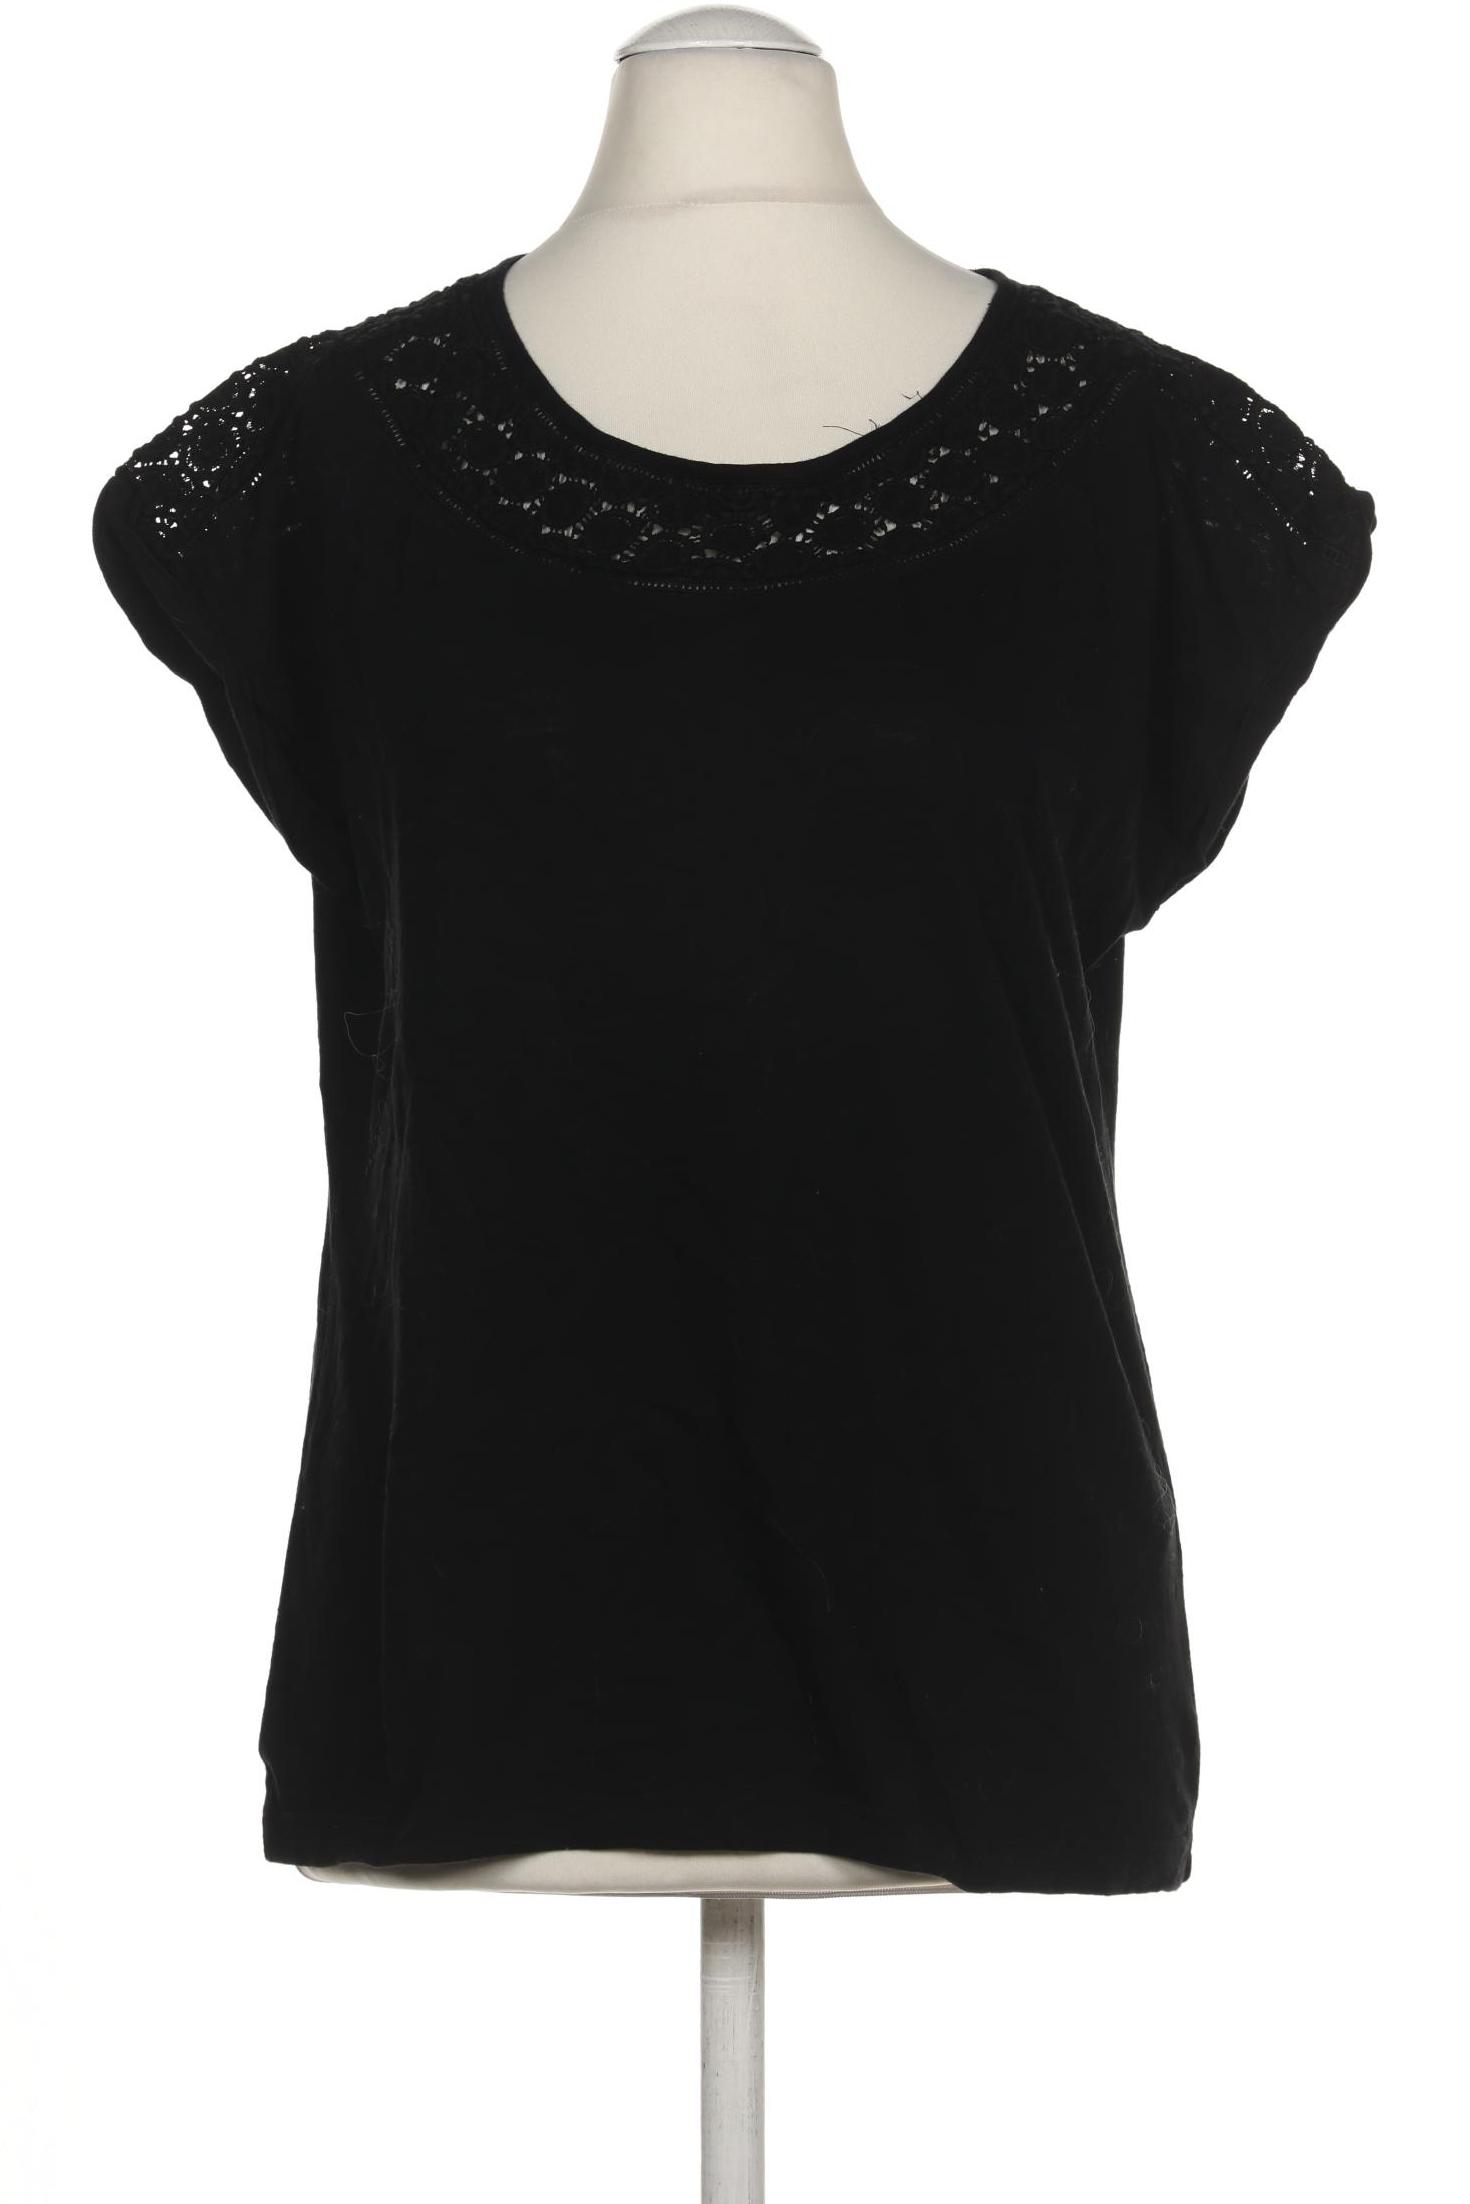 s.Oliver Selection Damen T-Shirt, schwarz, Gr. 36 von s.Oliver Selection